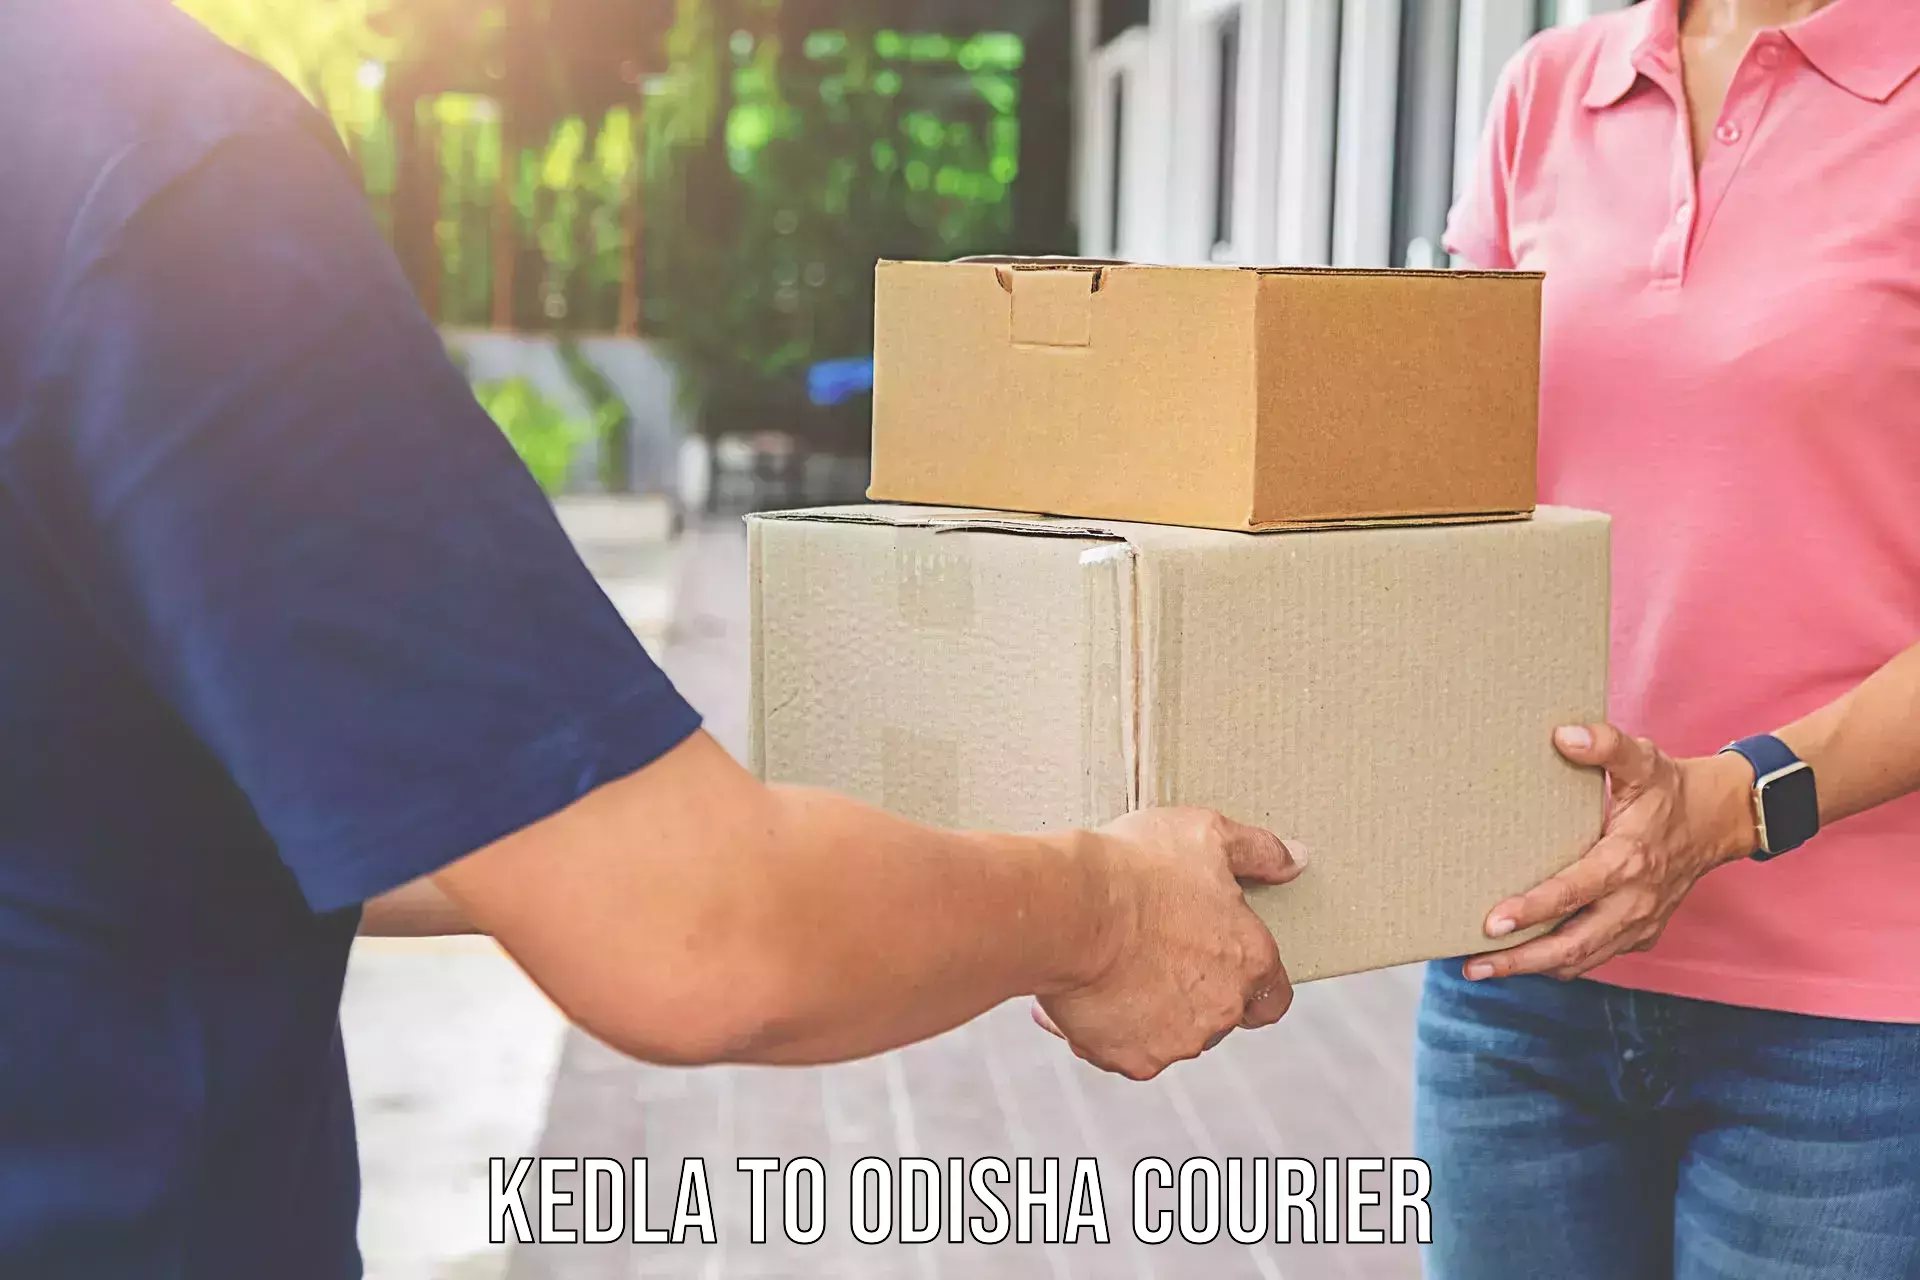 Household goods transport service Kedla to Sambalpur